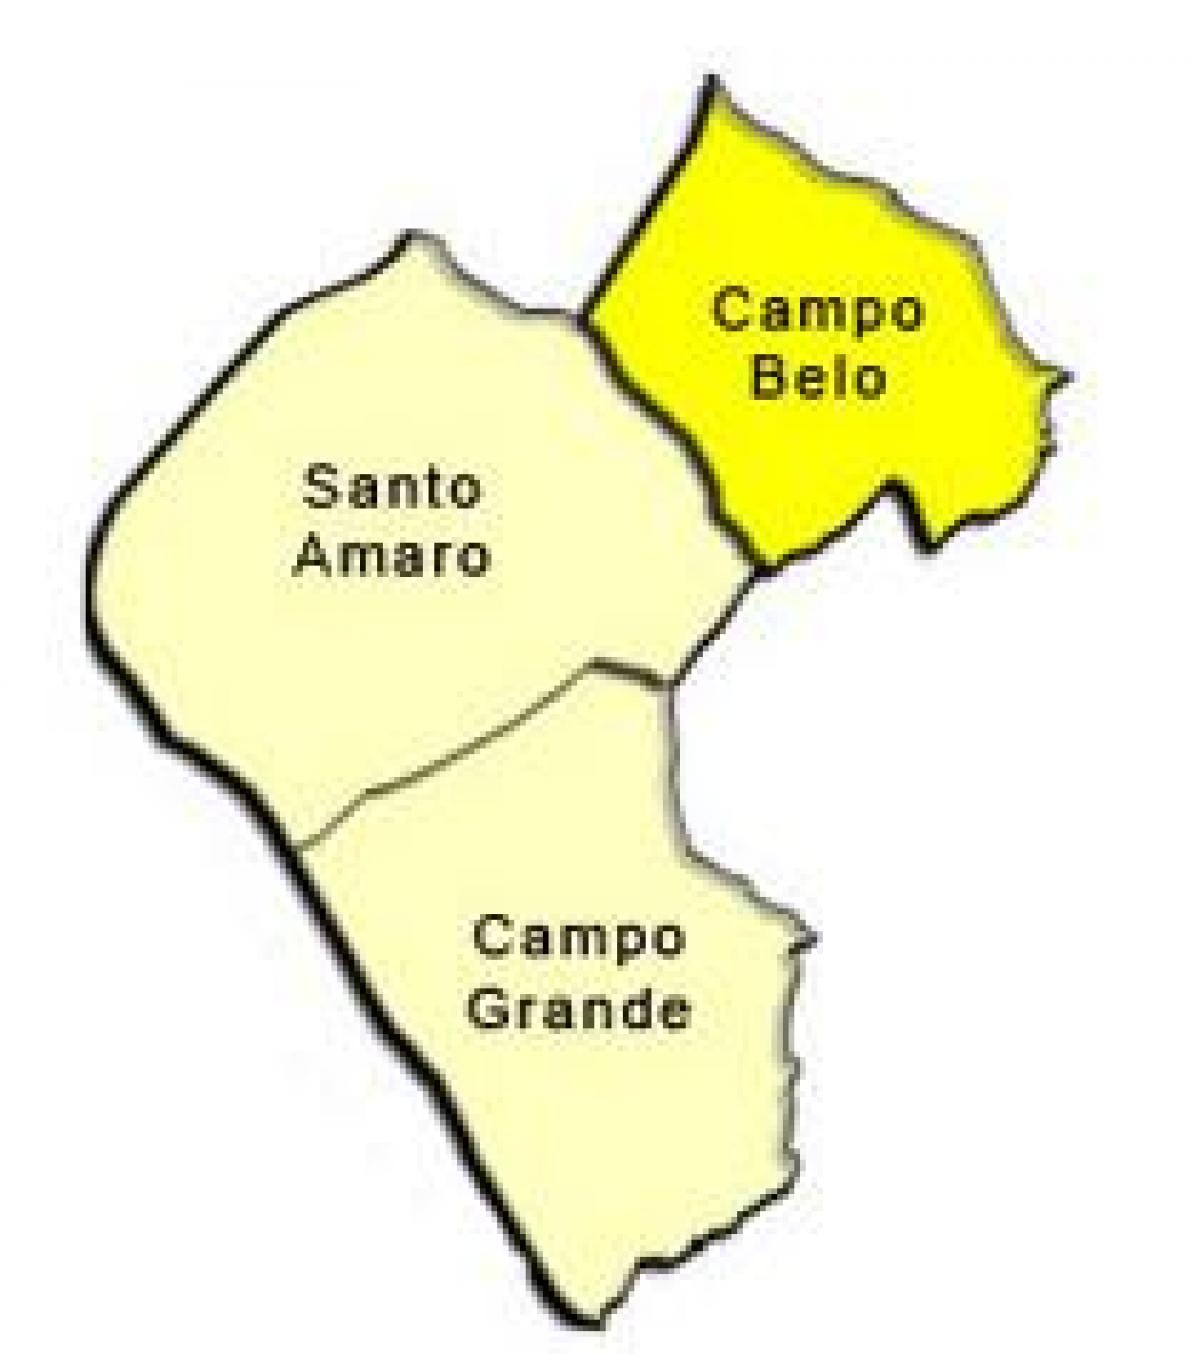 Քարտեզ ենթաօրենսդրական պրեֆեկտուրայում Սանտո-Амару